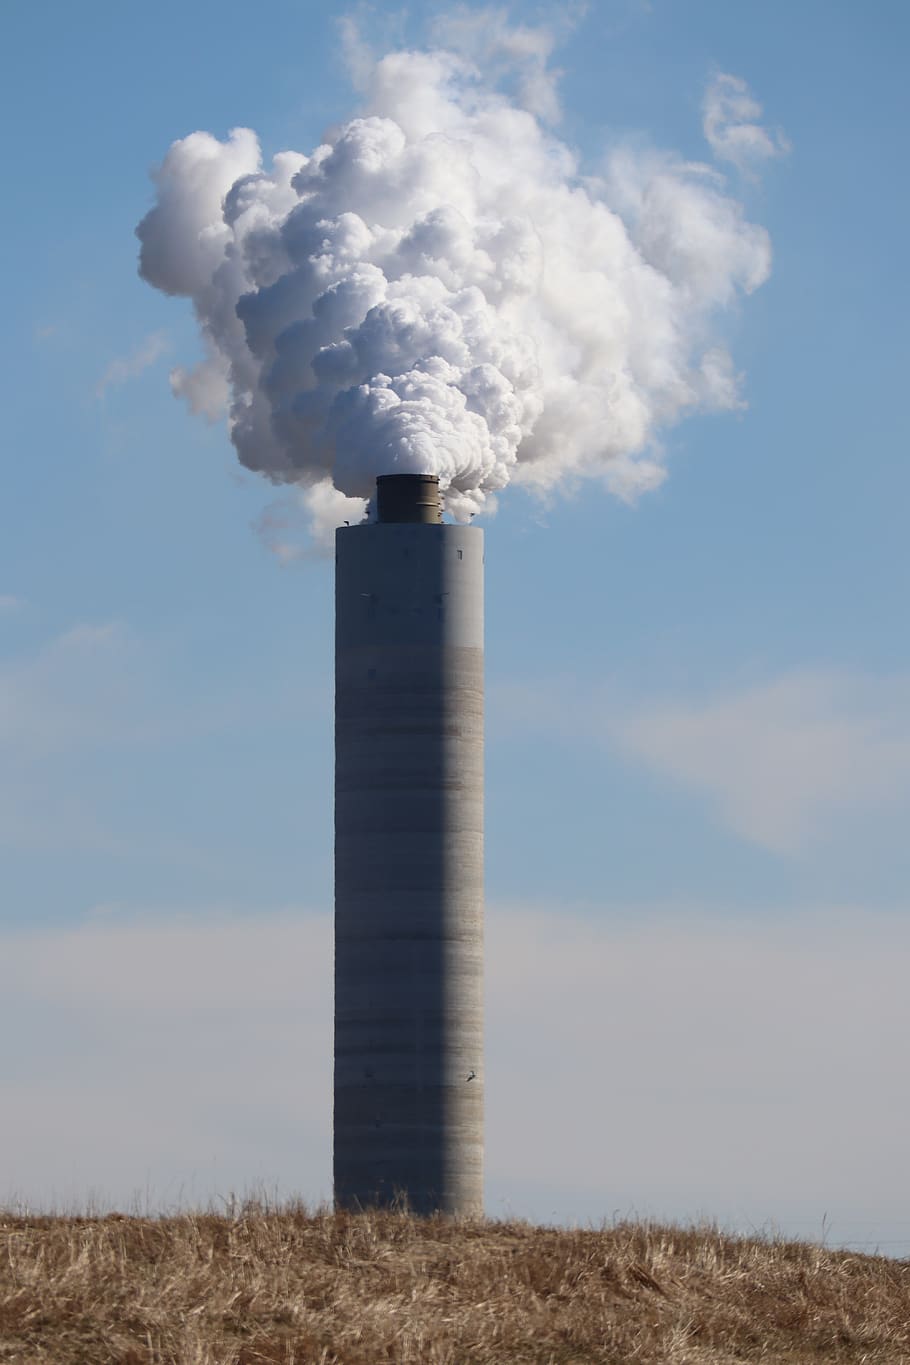 contaminación, contaminación del aire, humo, chimenea, planta de energía, cielo, nube - cielo, medio ambiente, humo - estructura física, día